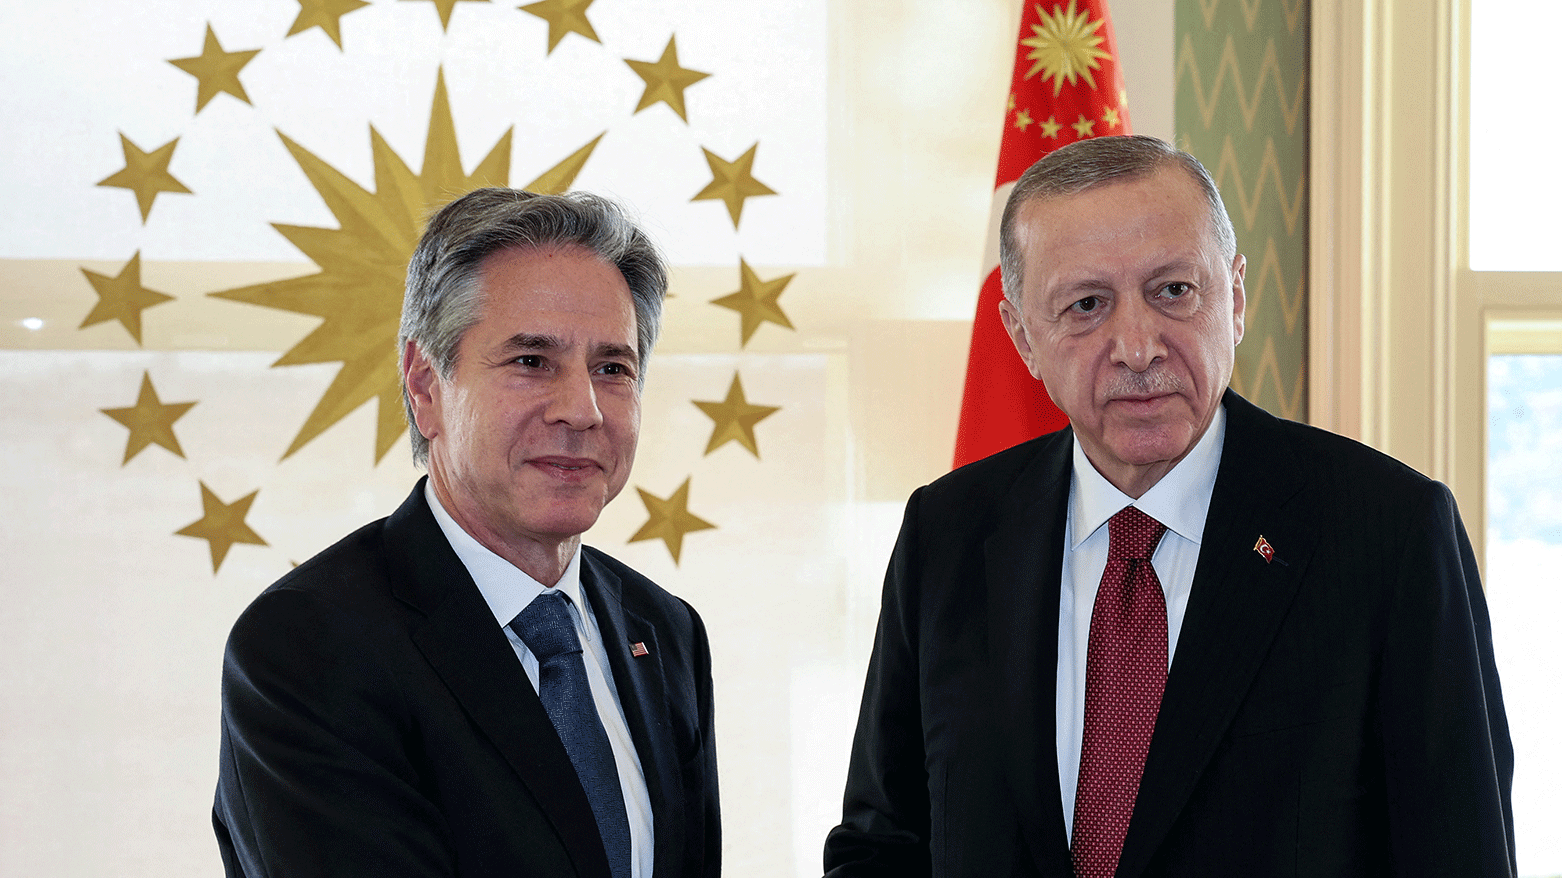 UPDATE No escalation Blinken holds talks on Middle East in Greece Turkey